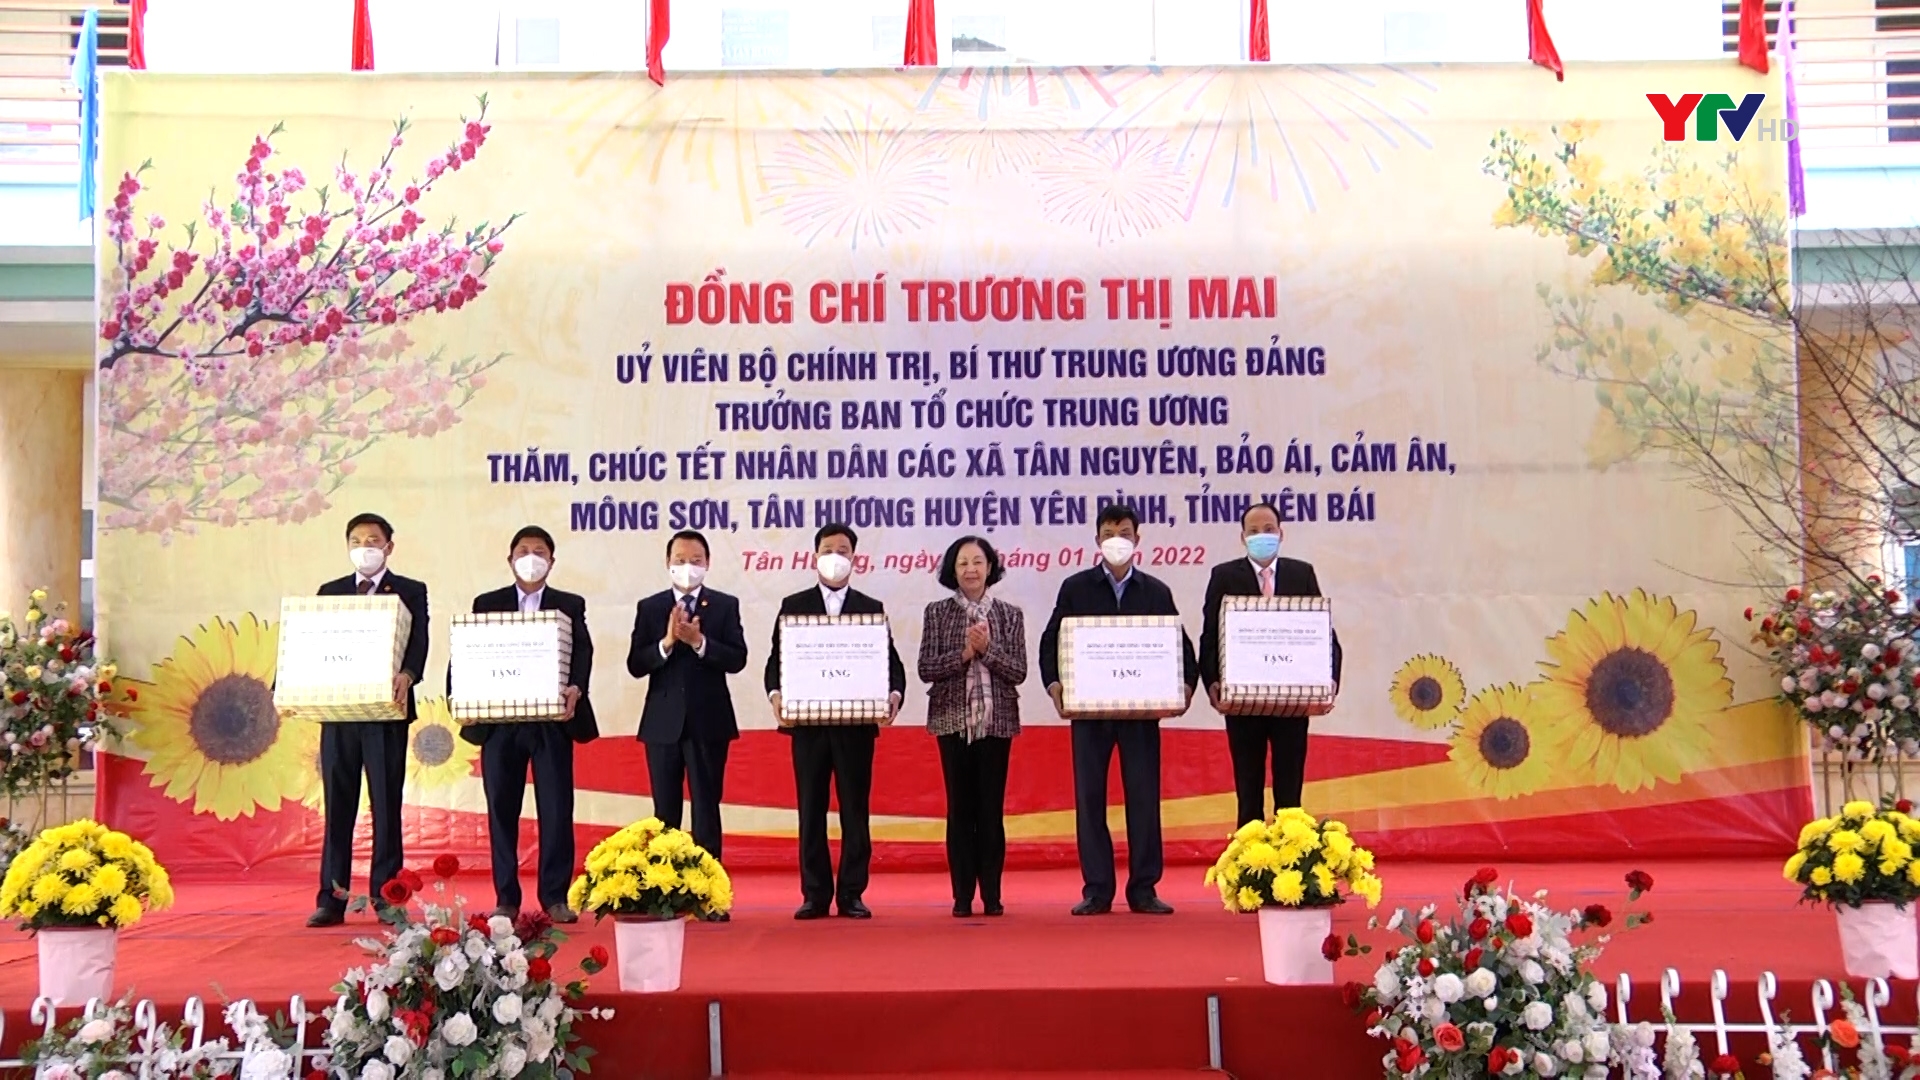 Đồng chí Trương Thị Mai - Trưởng Ban Tổ chức TW cùng đoàn công tác thăm, chúc Tết một số đơn vị, địa phương